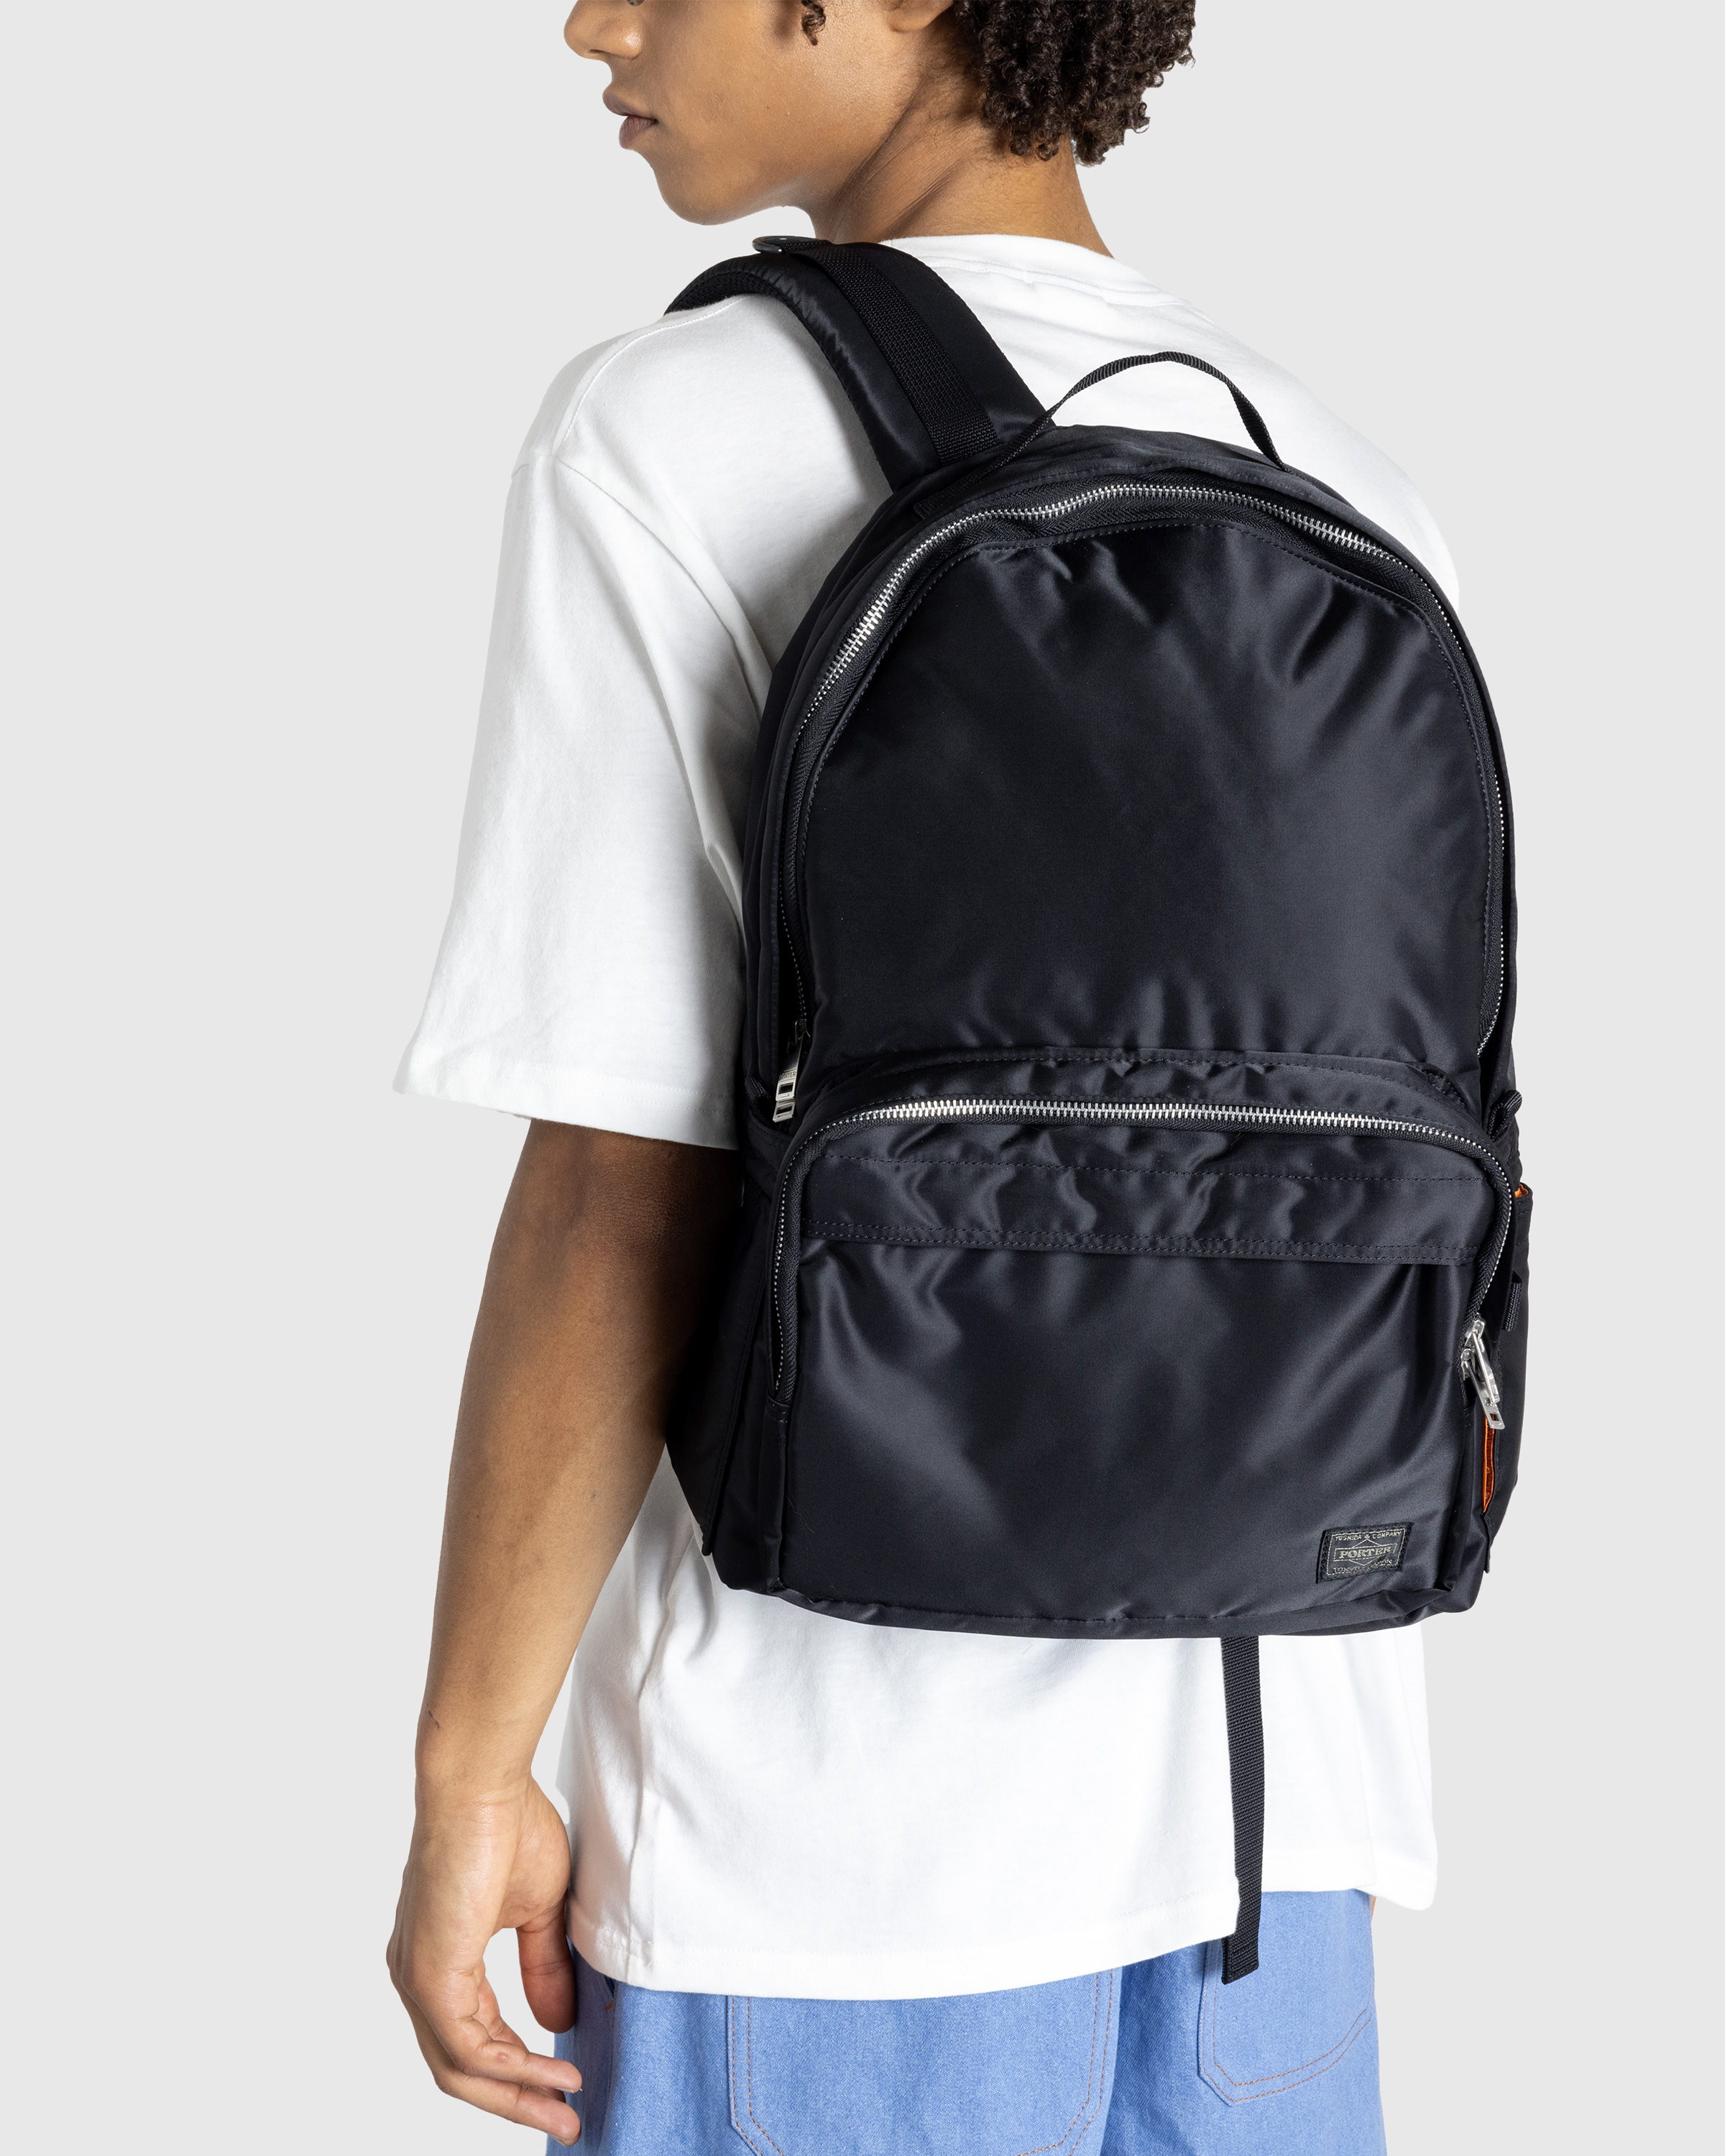 Porter-Yoshida & Co. – Tanker Daypack Black - Shoulder Bags - Black - Image 4